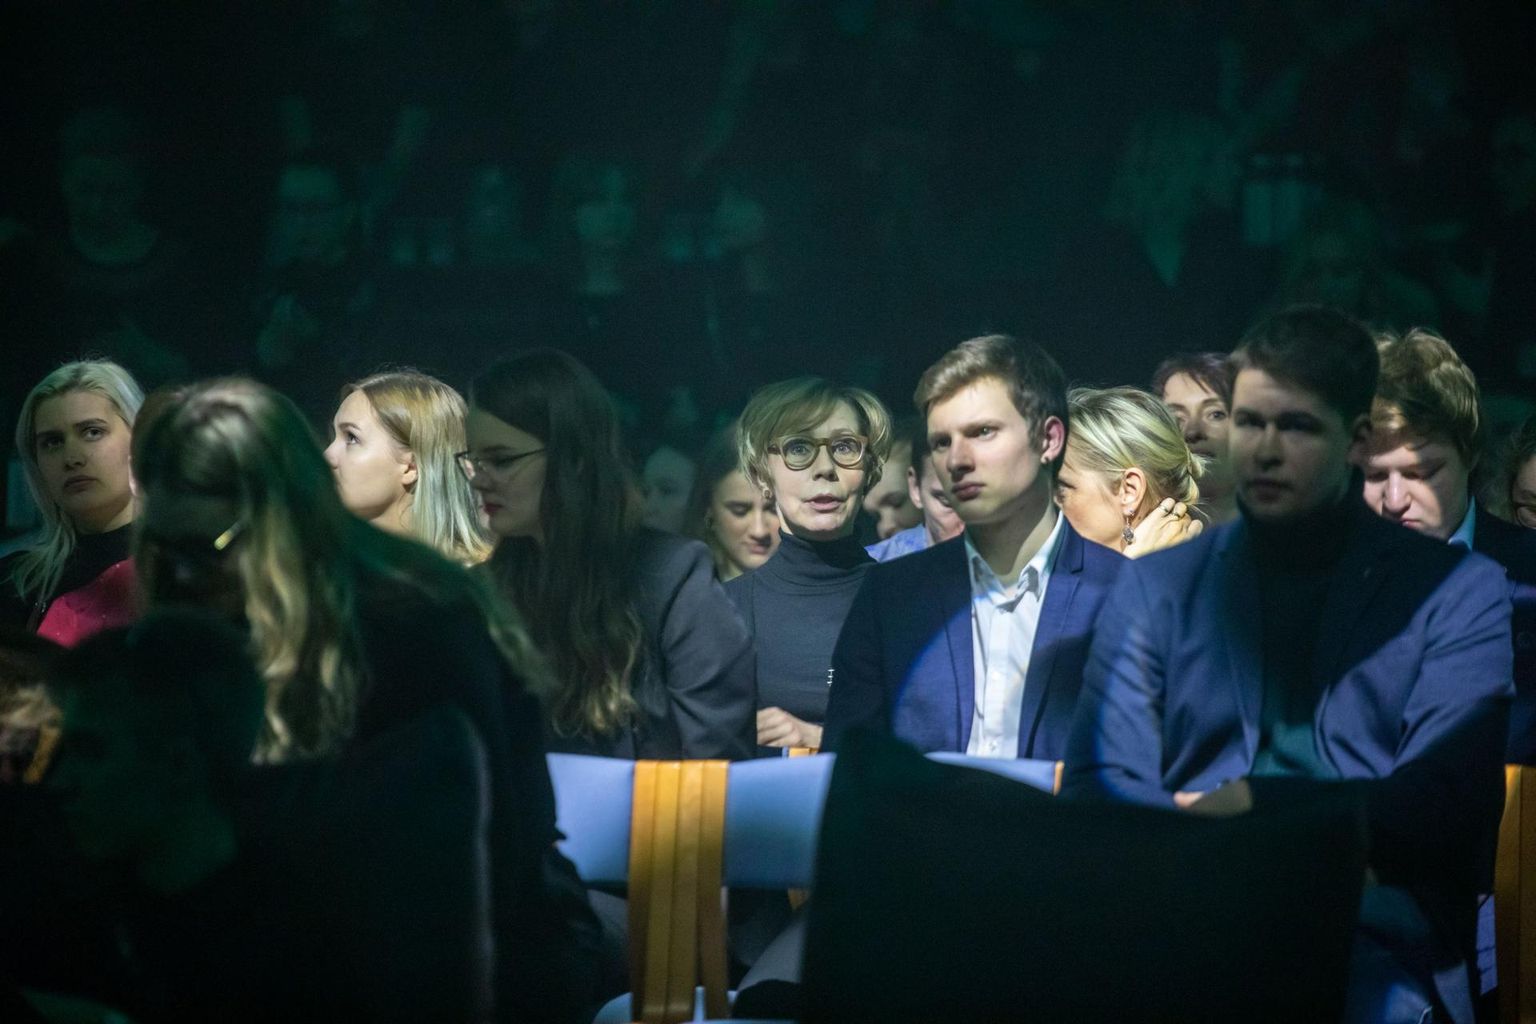 Rakvere gümnaasiumi filmifestival on suurejooneline üritus, mis saavutas edulugude konkursil tiitli "Parim koostöötegu".